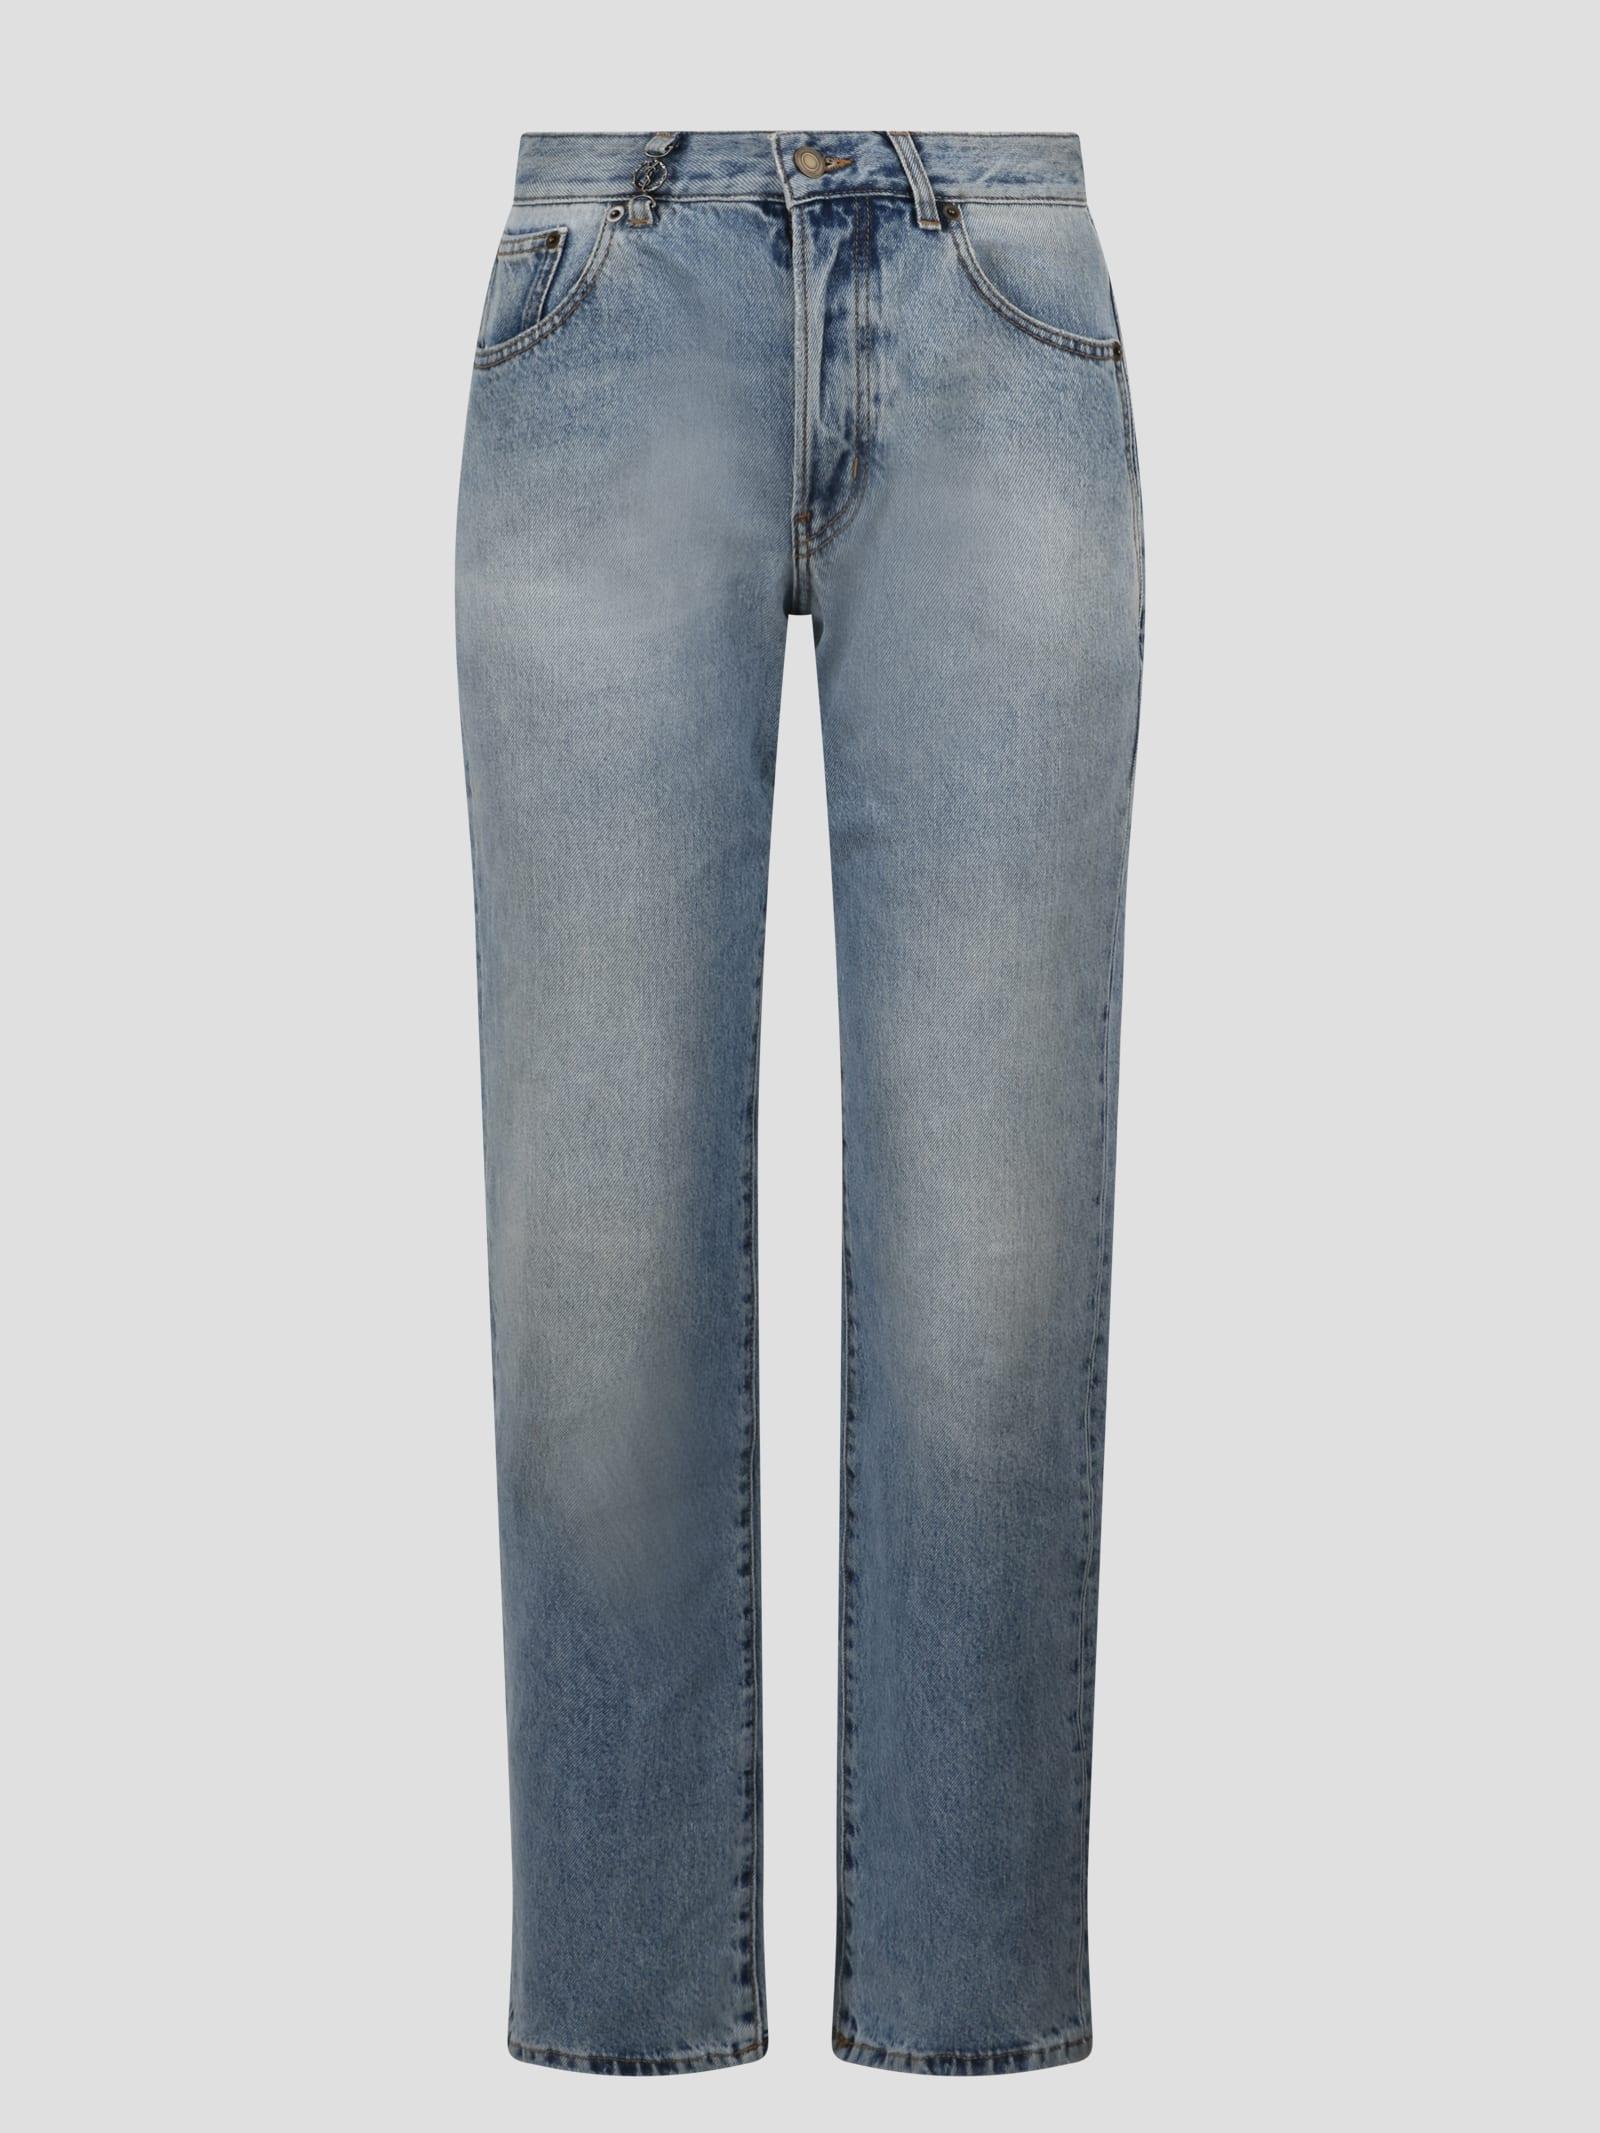 Louis Vuitton, Jeans, Louis Vuitton Denim Mid Rise Straight Leg Jeans